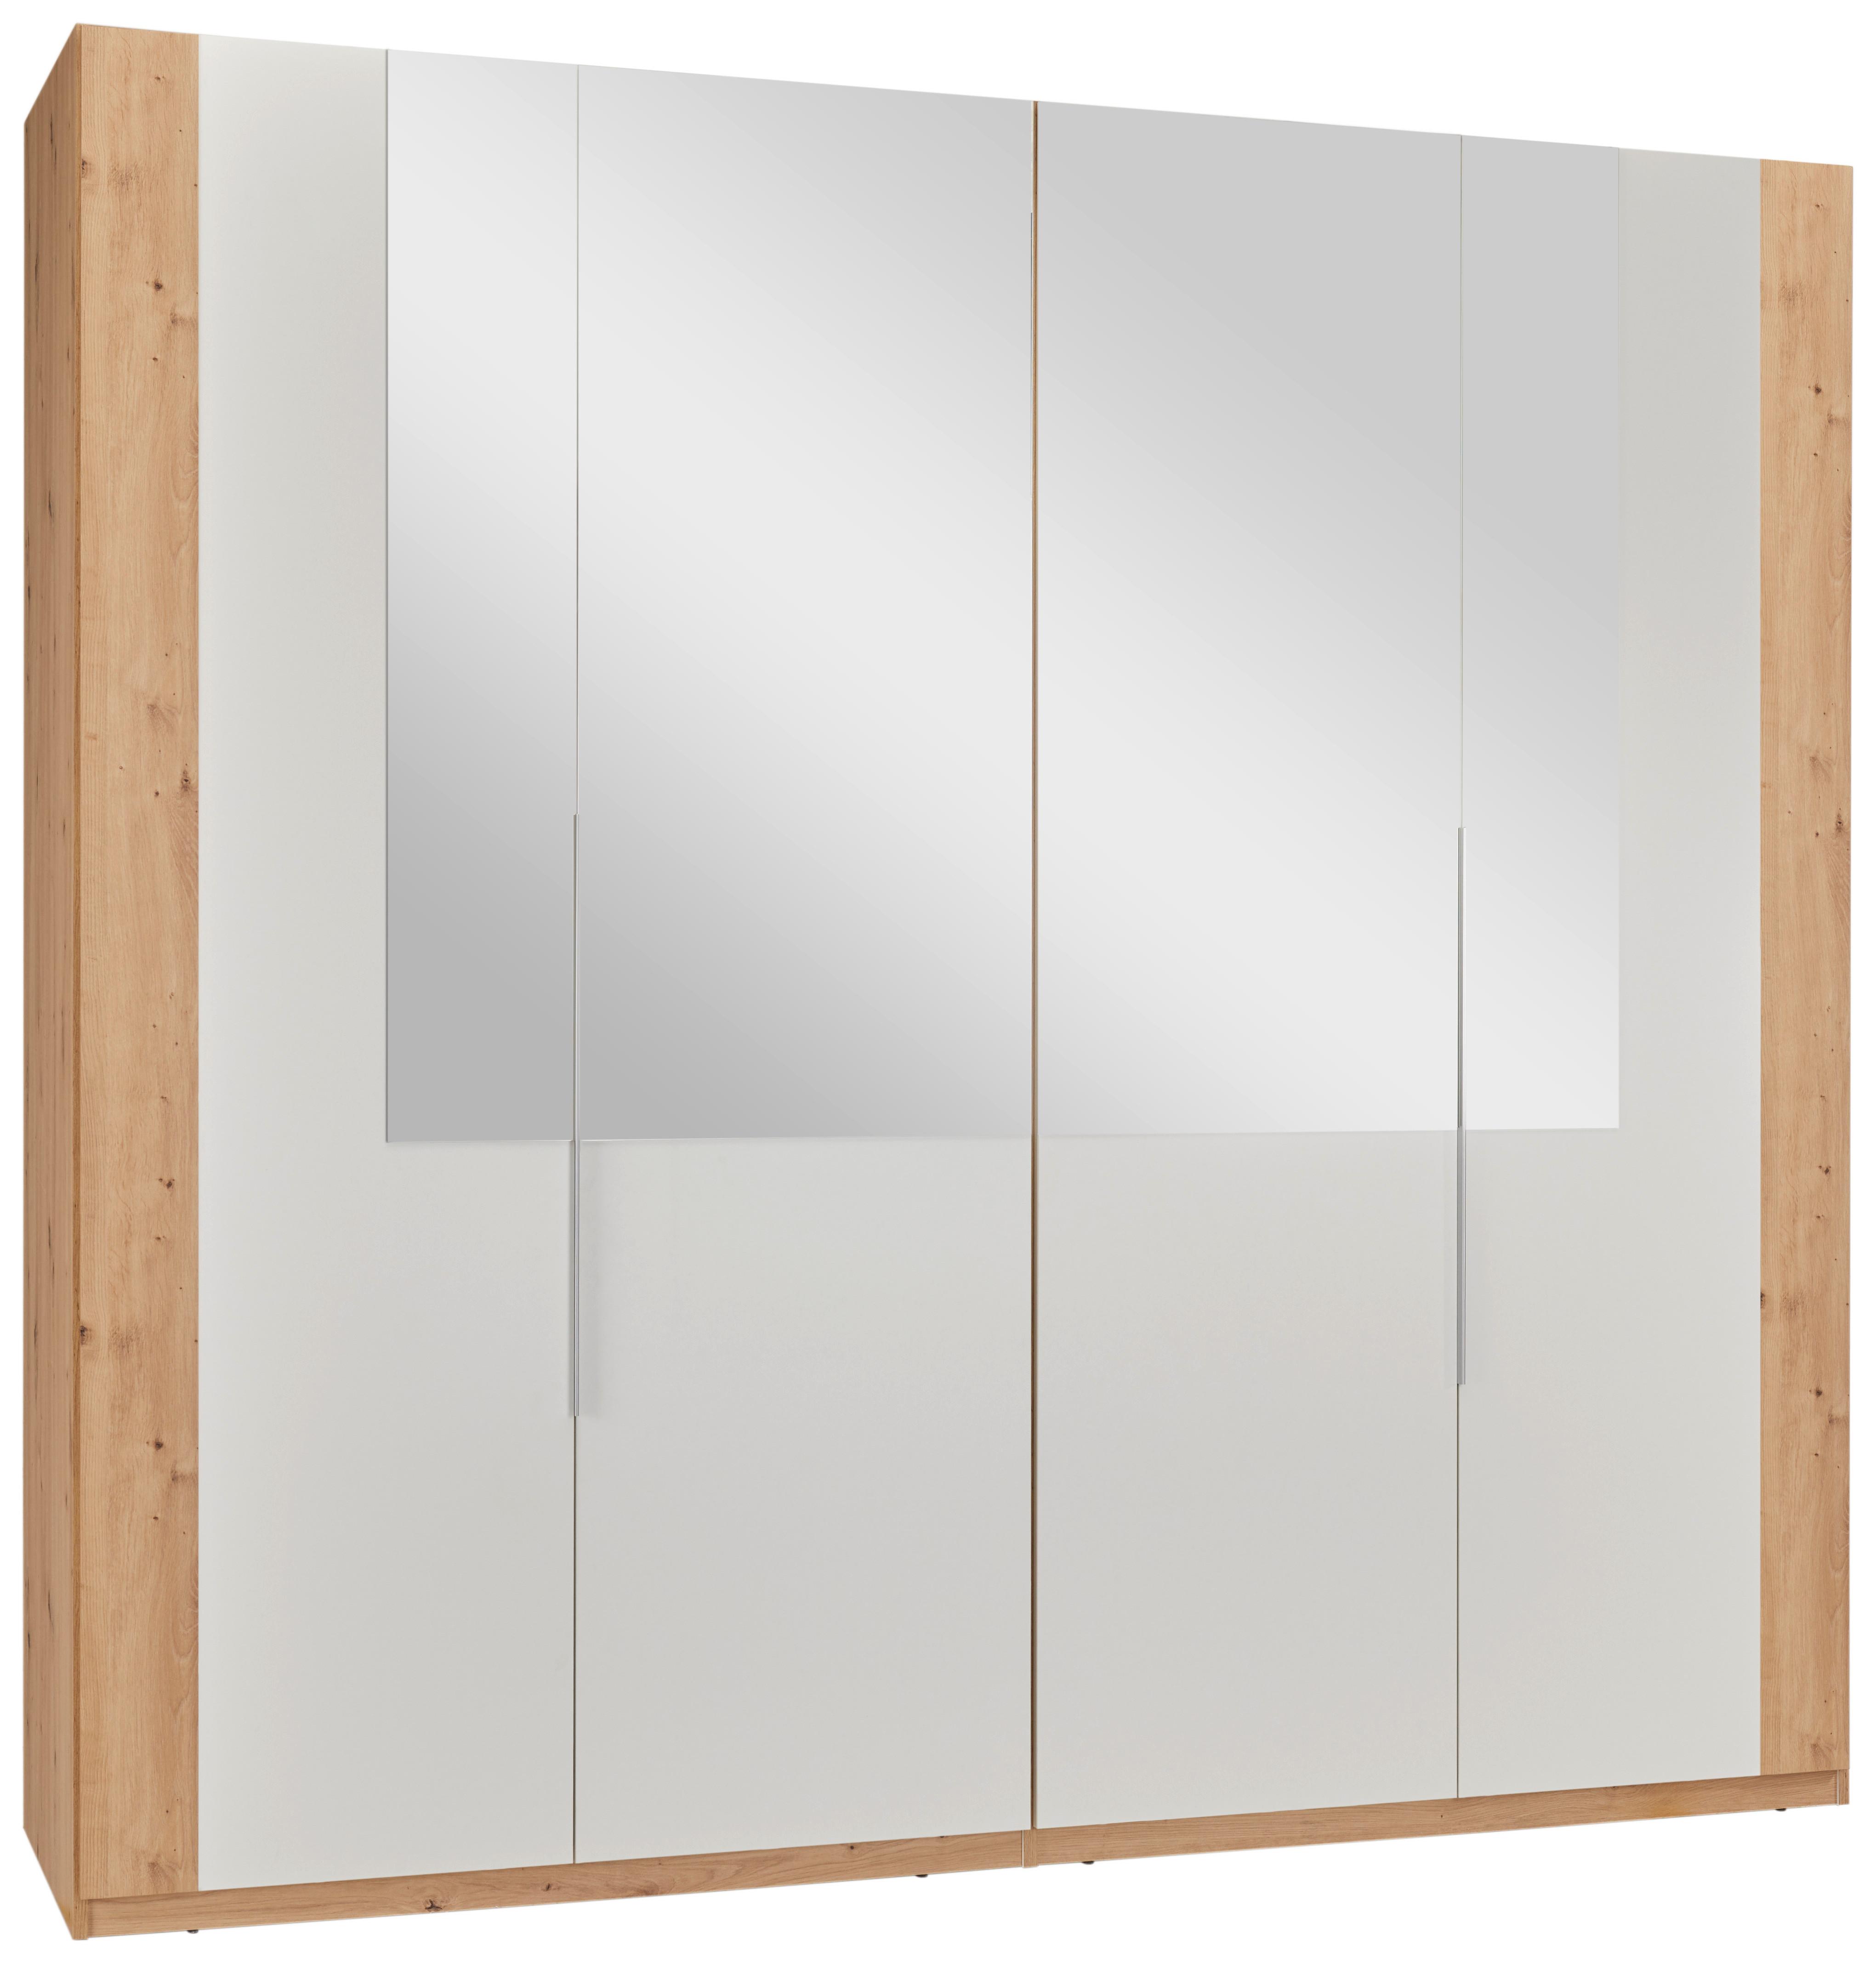 Ruhásszekrény Tükörrel Complete - Fehér/Artisan tölgy, konvencionális, Faalapú anyag/Műanyag (228/215/60cm) - Modern Living